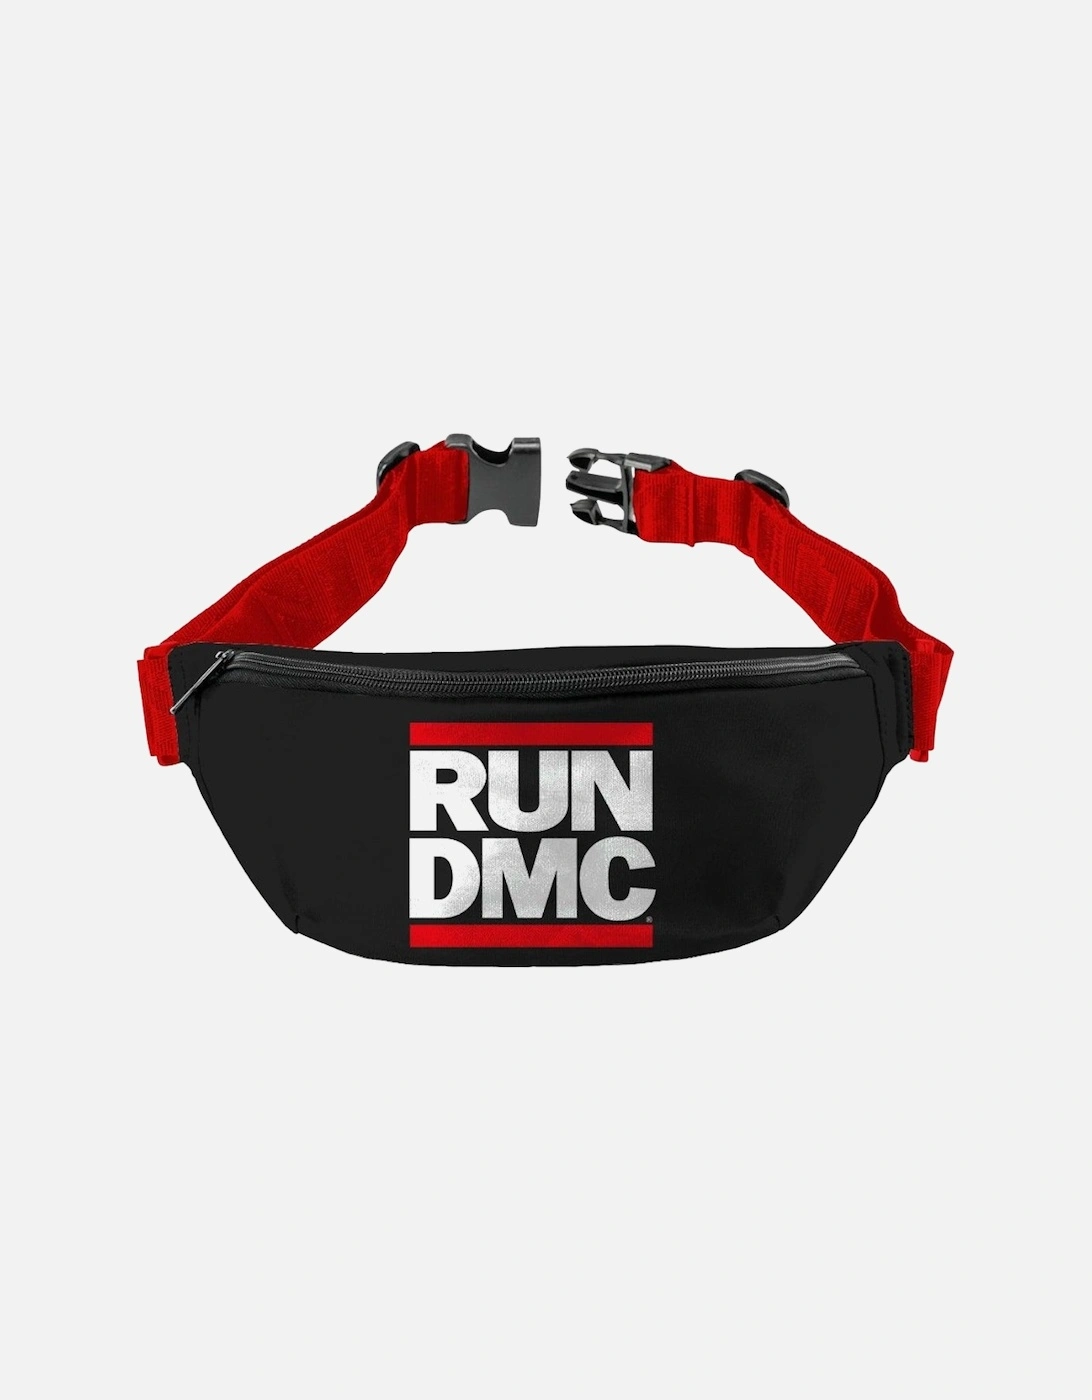 Run DMC Bum Bag, 2 of 1